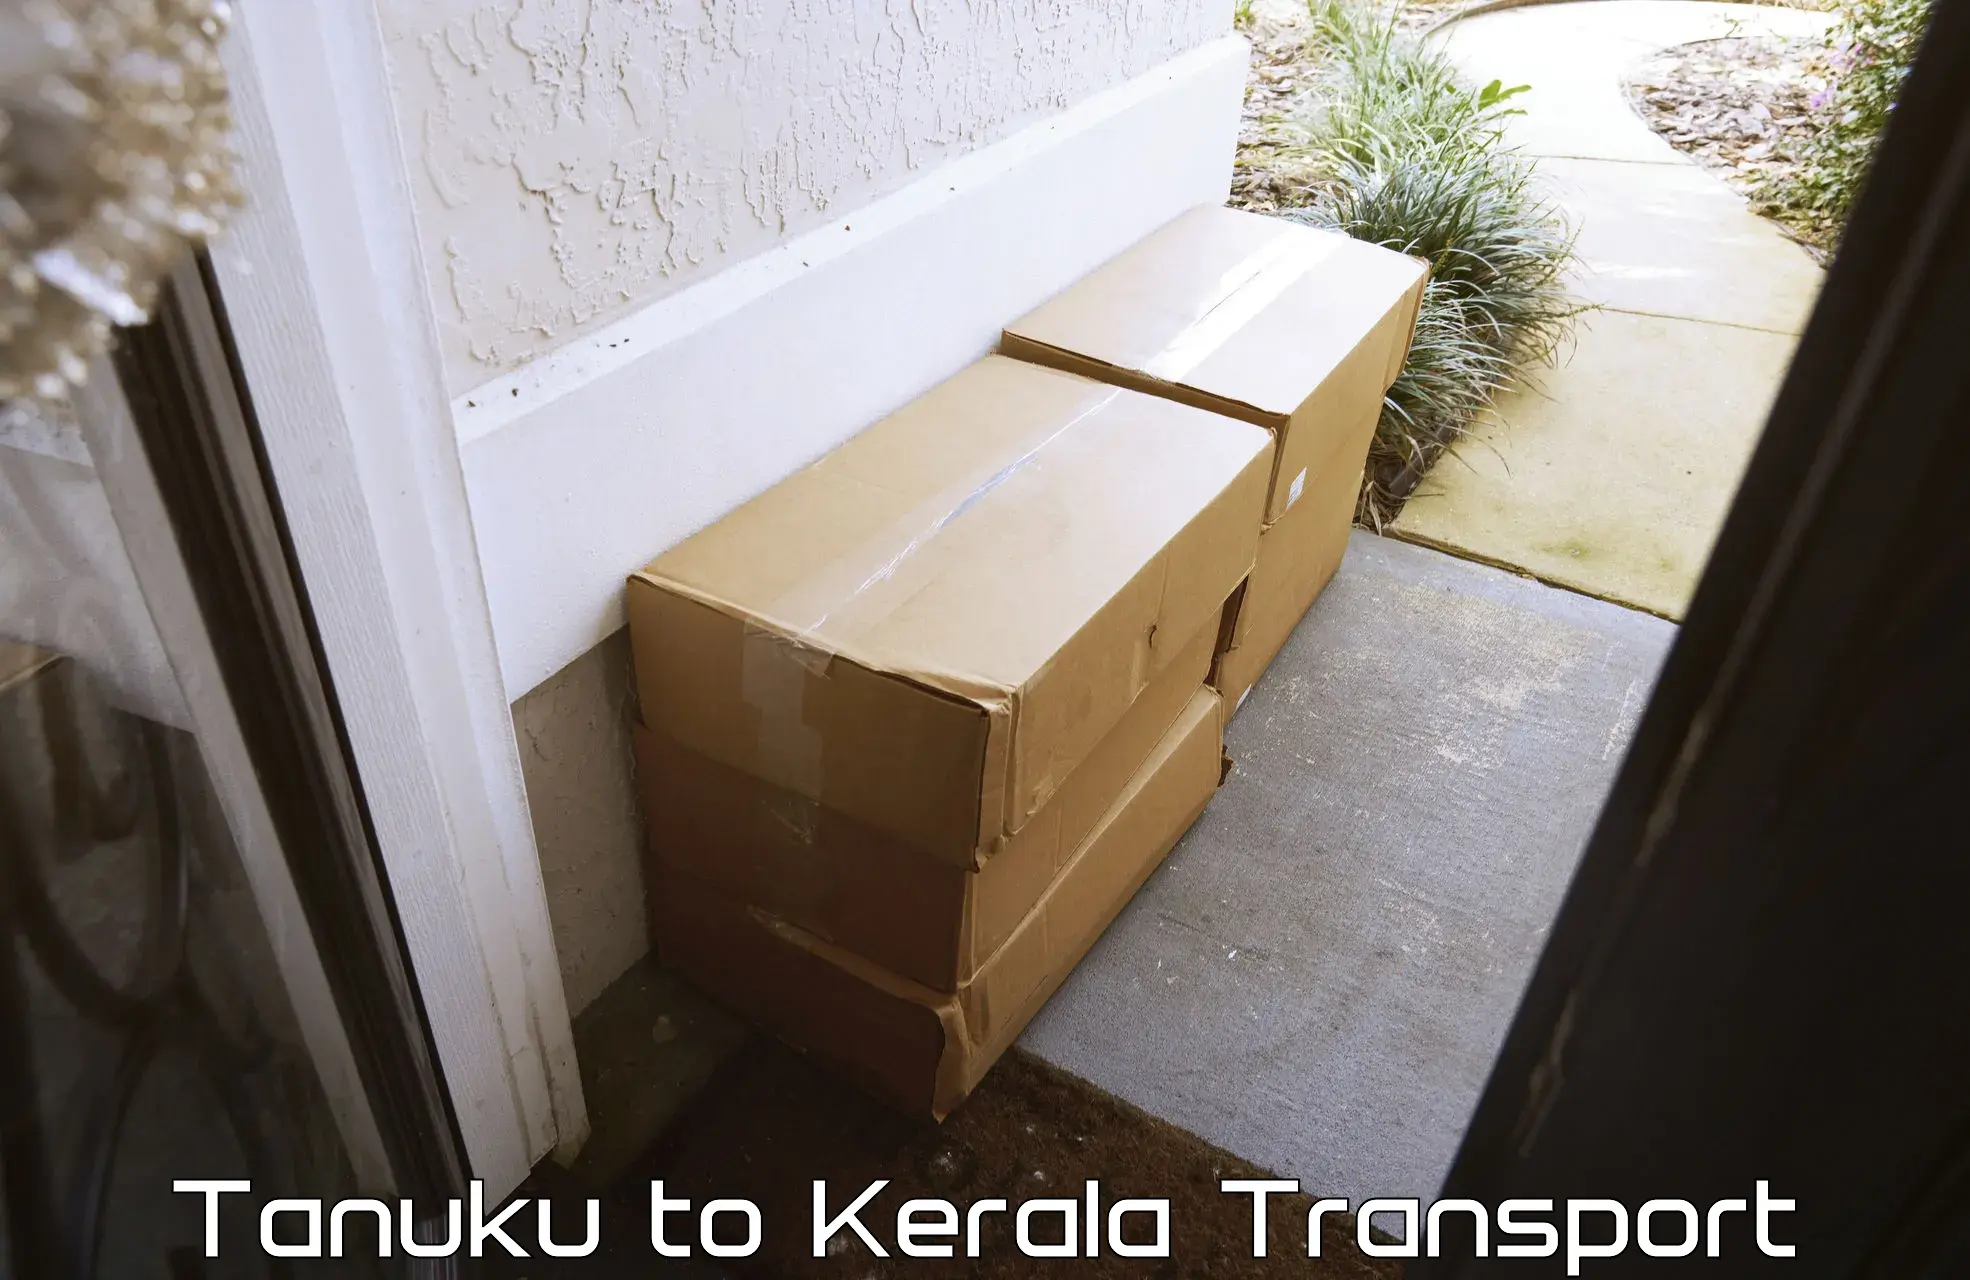 Goods transport services in Tanuku to Narikkuni